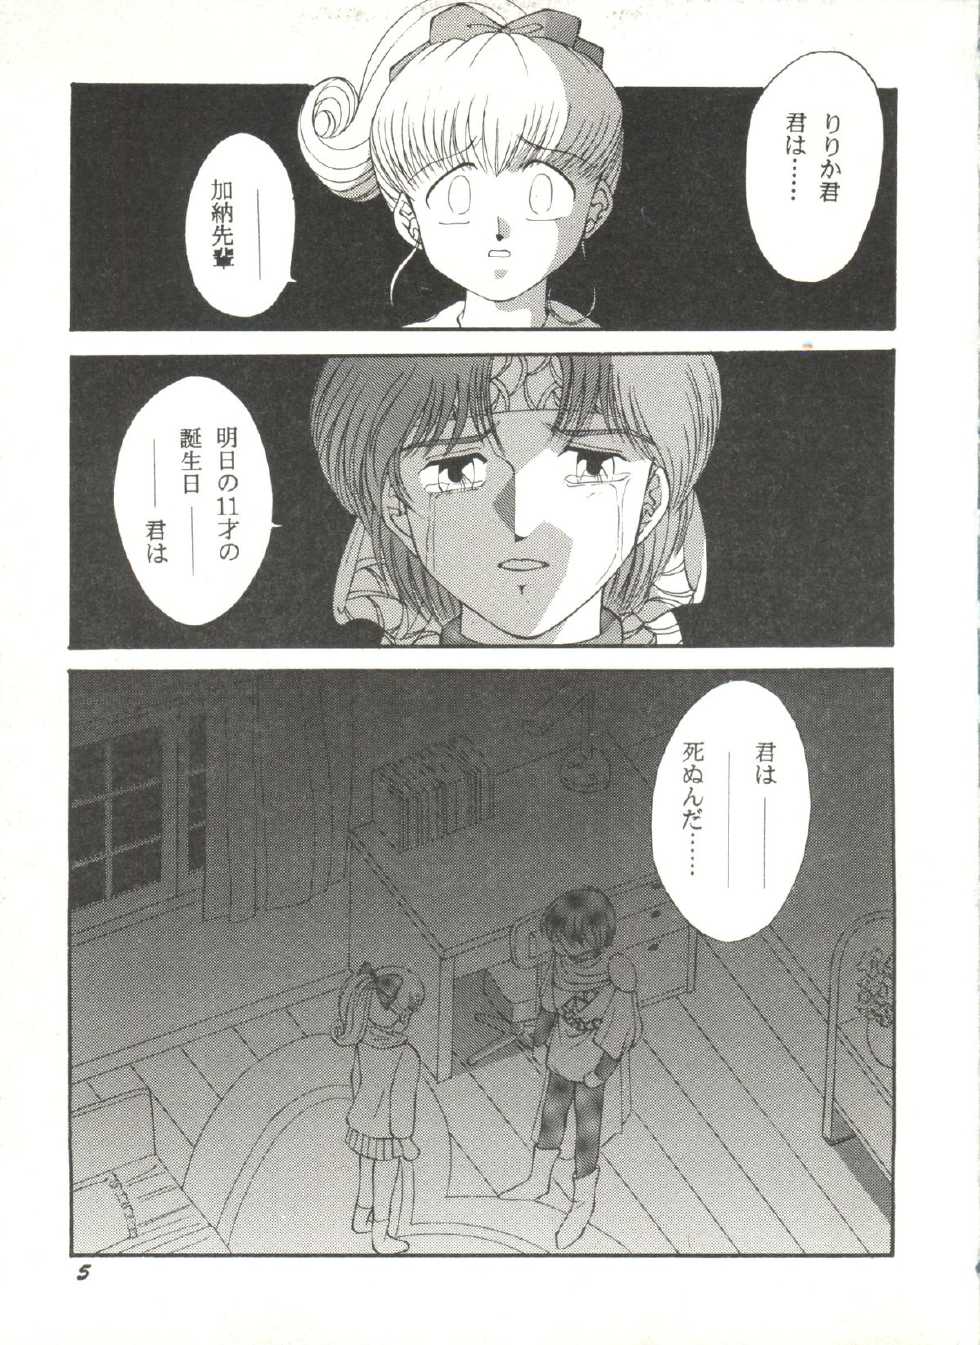 [Anthology] Doujin Anthology Bishoujo Gumi 6 (Various) - Page 9